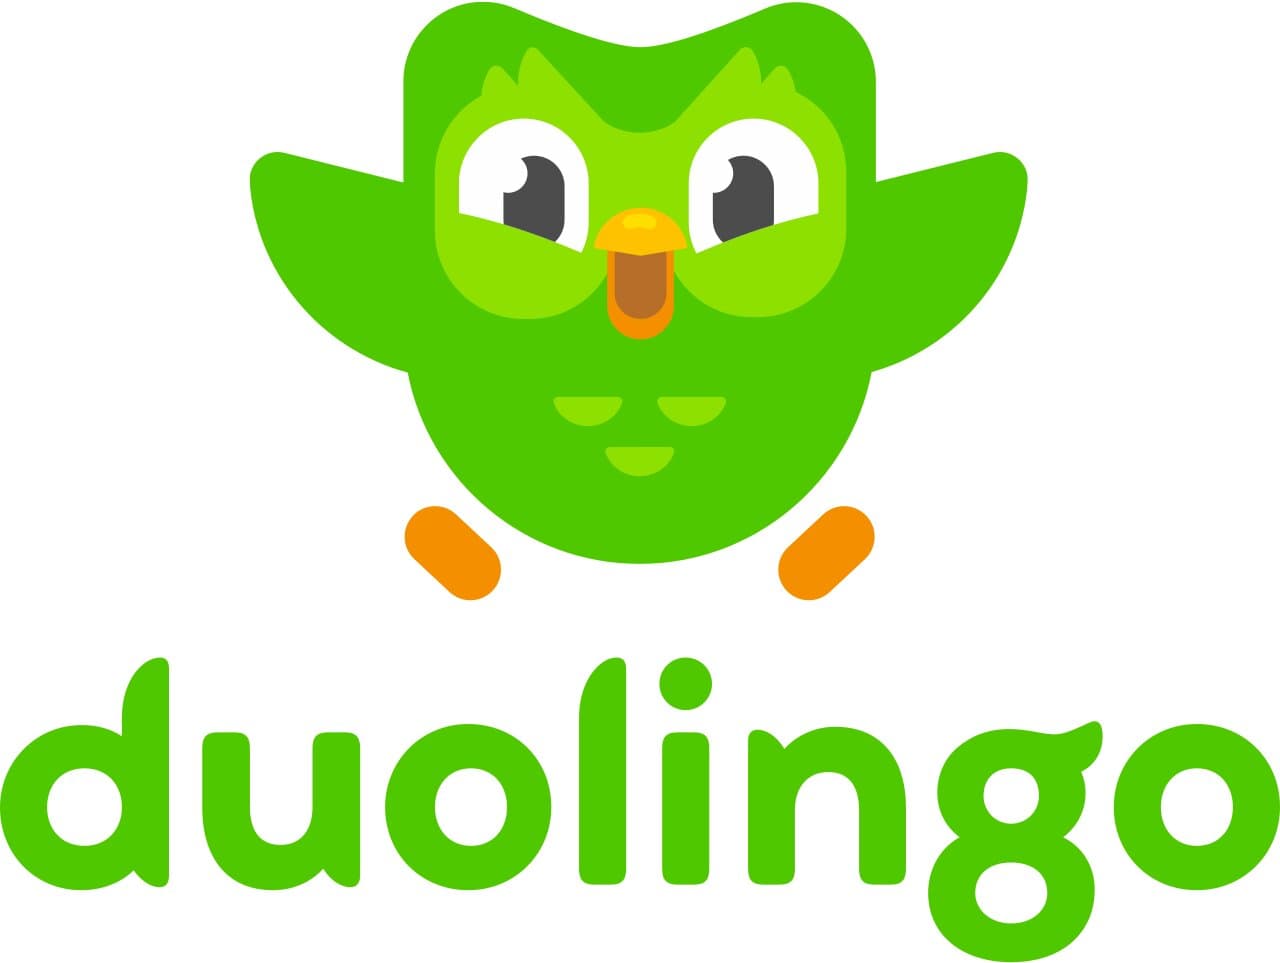 duolingo is